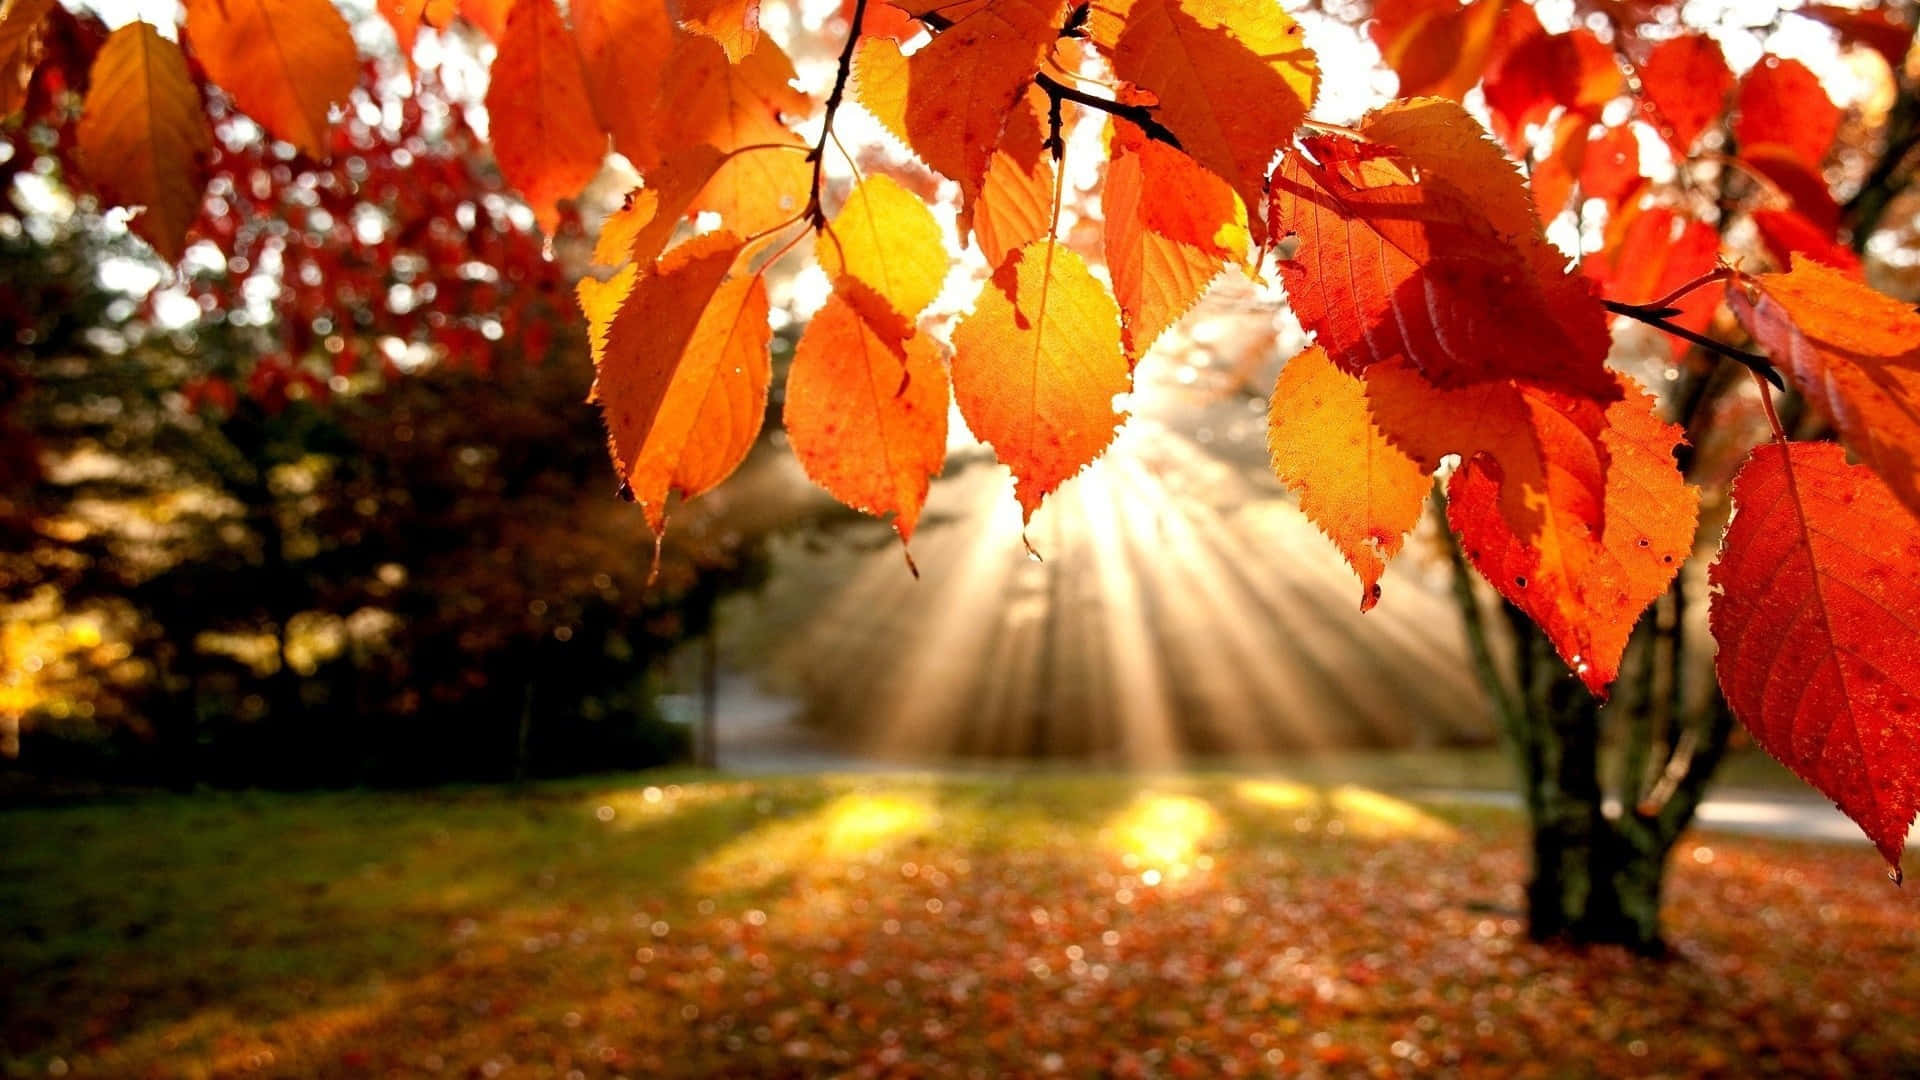 Icolori Dell'autunno Riempiono La Natura Di Calore E Bellezza